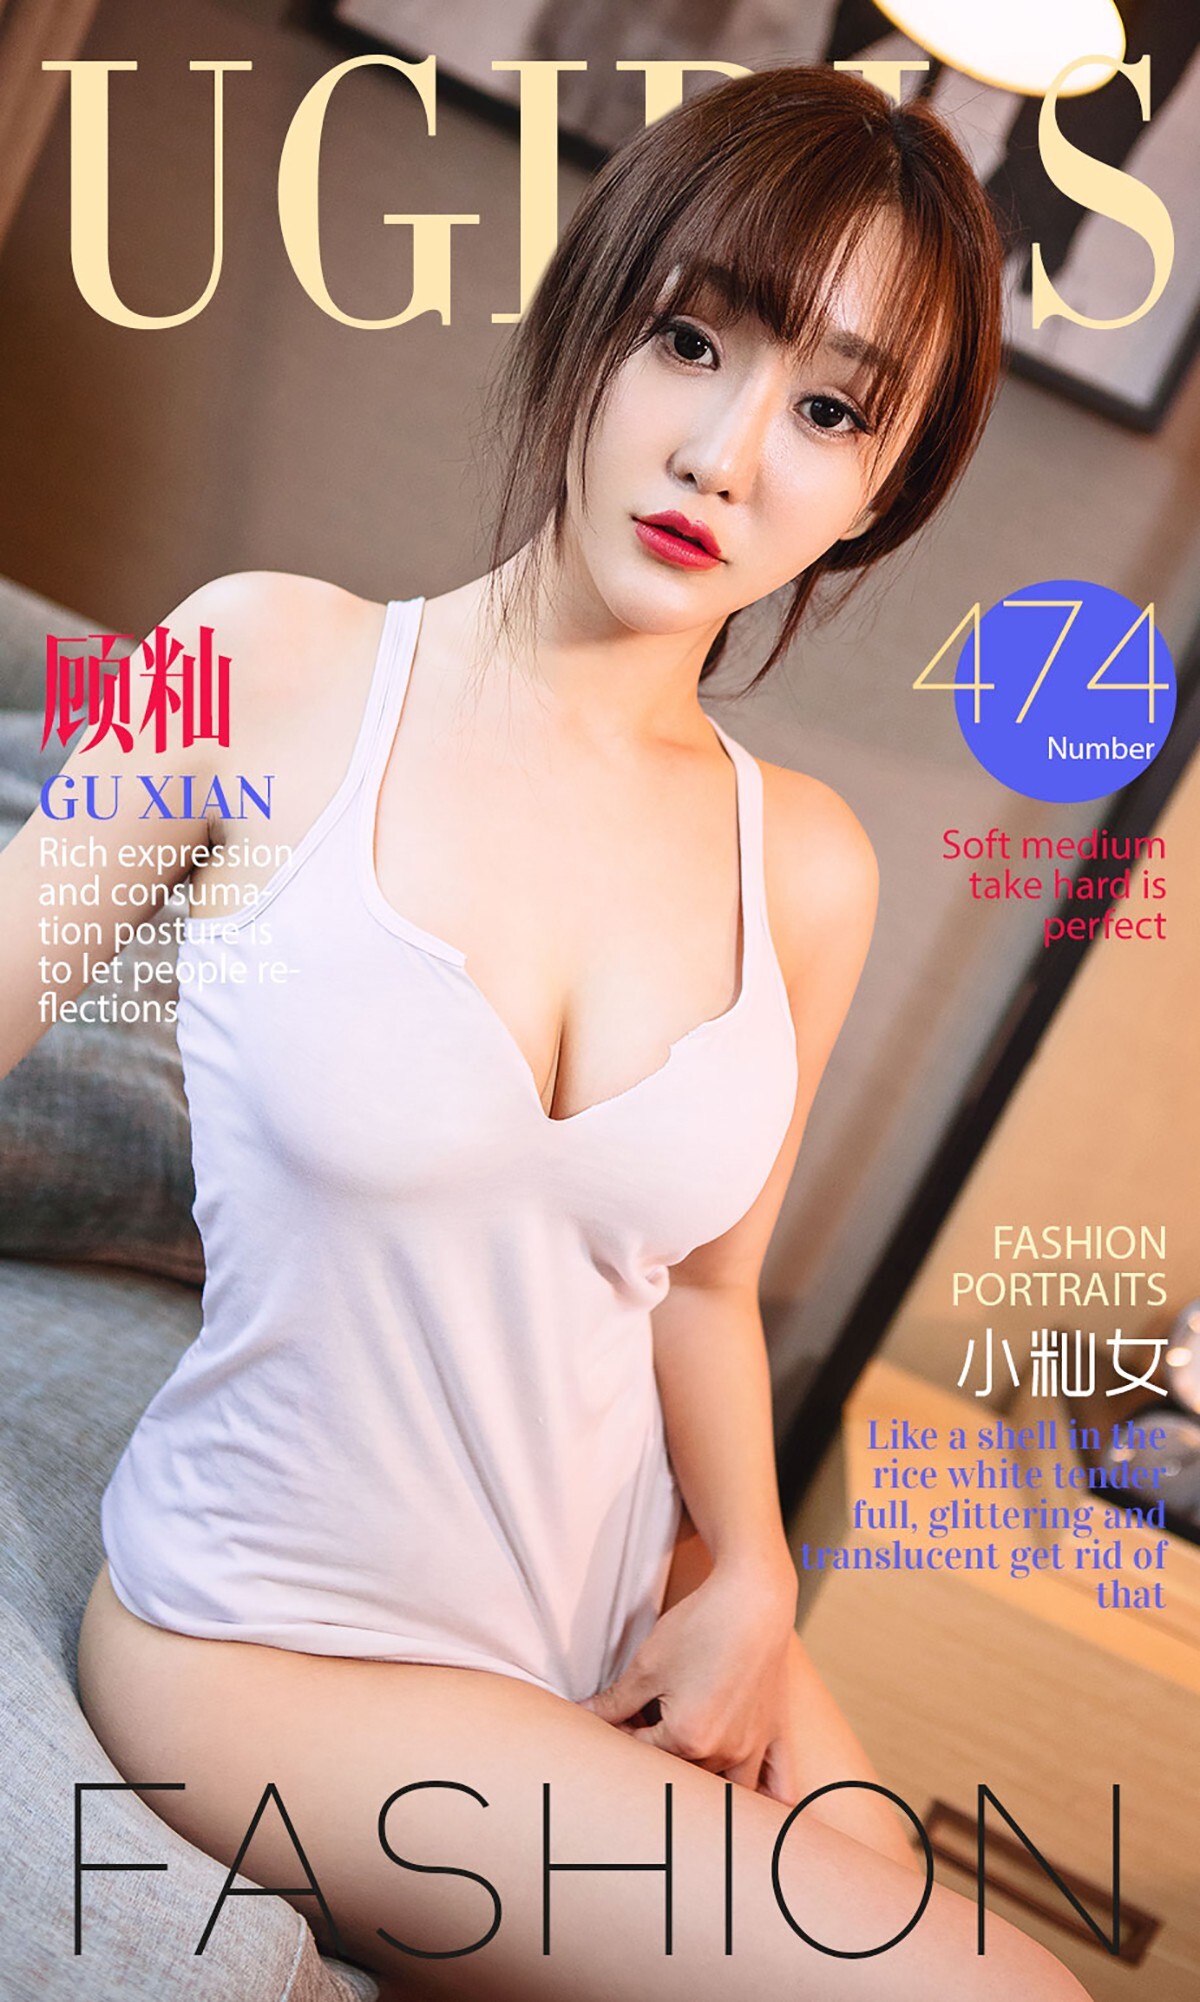 [ugirls aiyouwu] 2016 issue No.474 Gu Xian